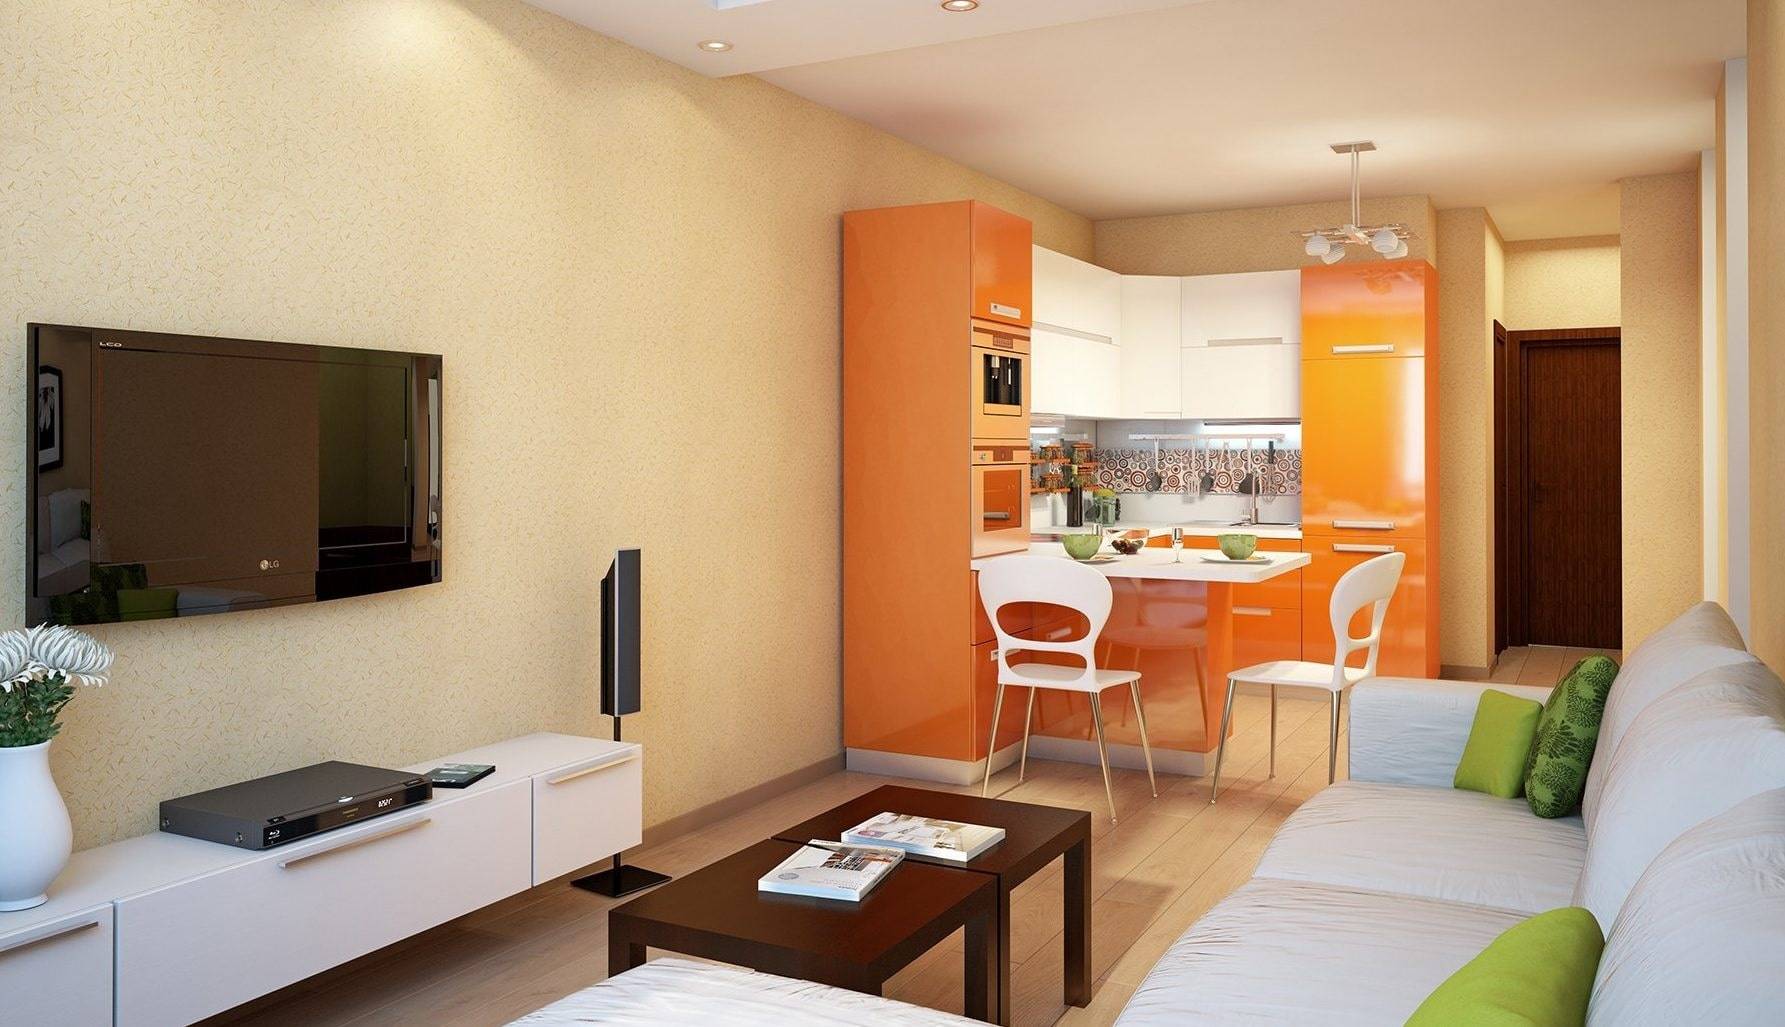 Дизайн кухни гостиной 12 кв м — фото с диваном